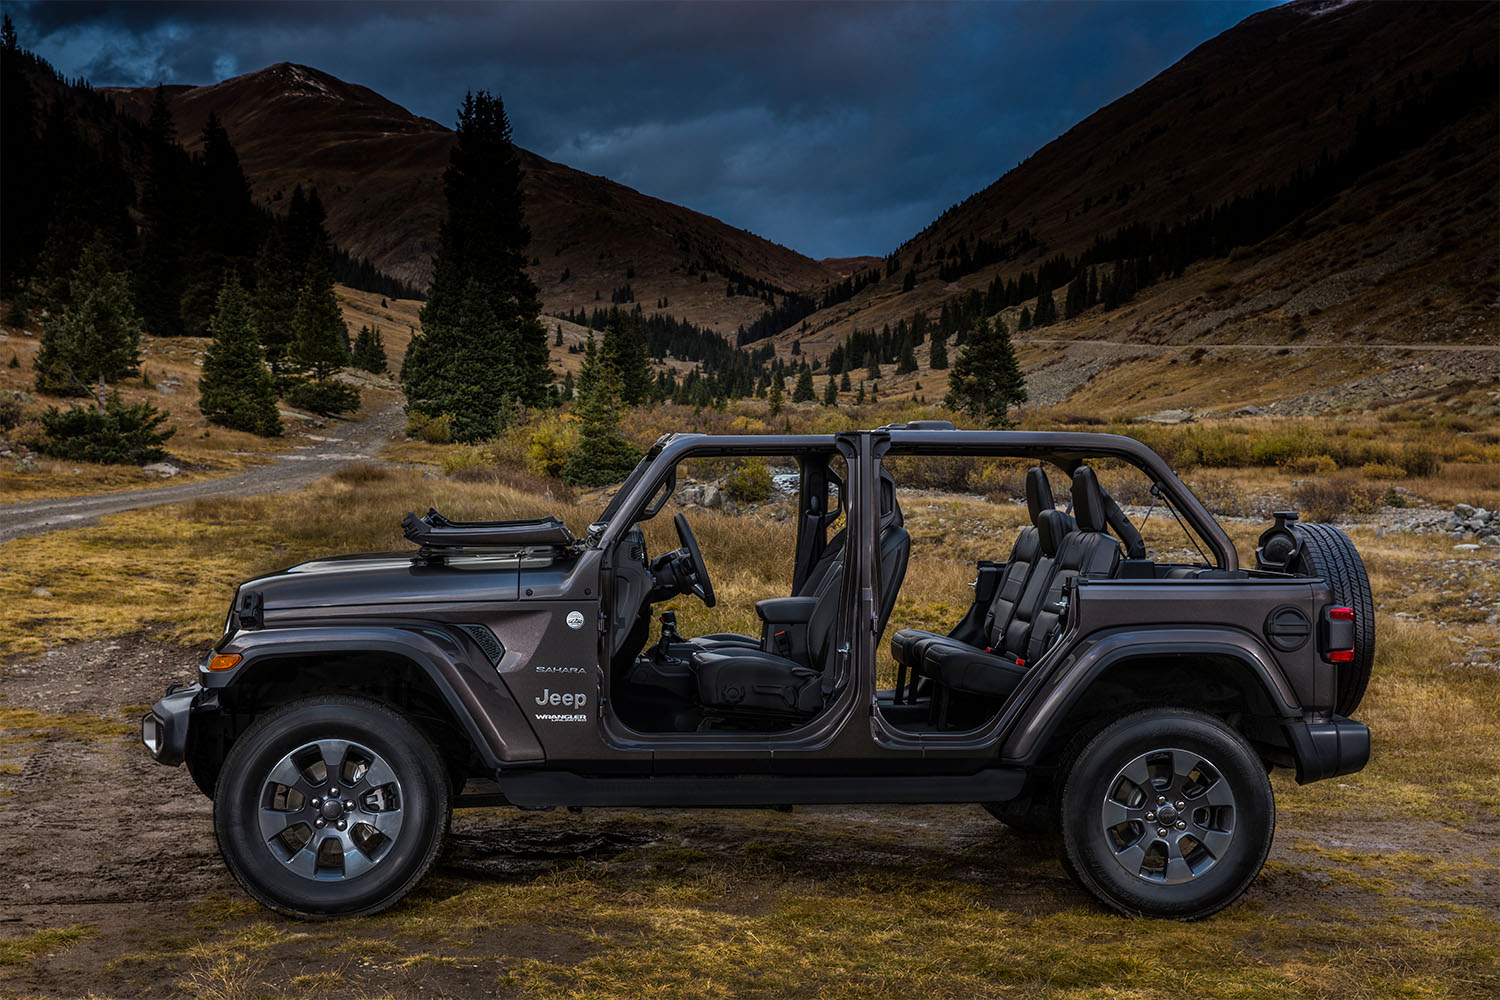 Jeep Accessories Kingman, AZ | Martin Swanty Chrysler Dodge Jeep Ram